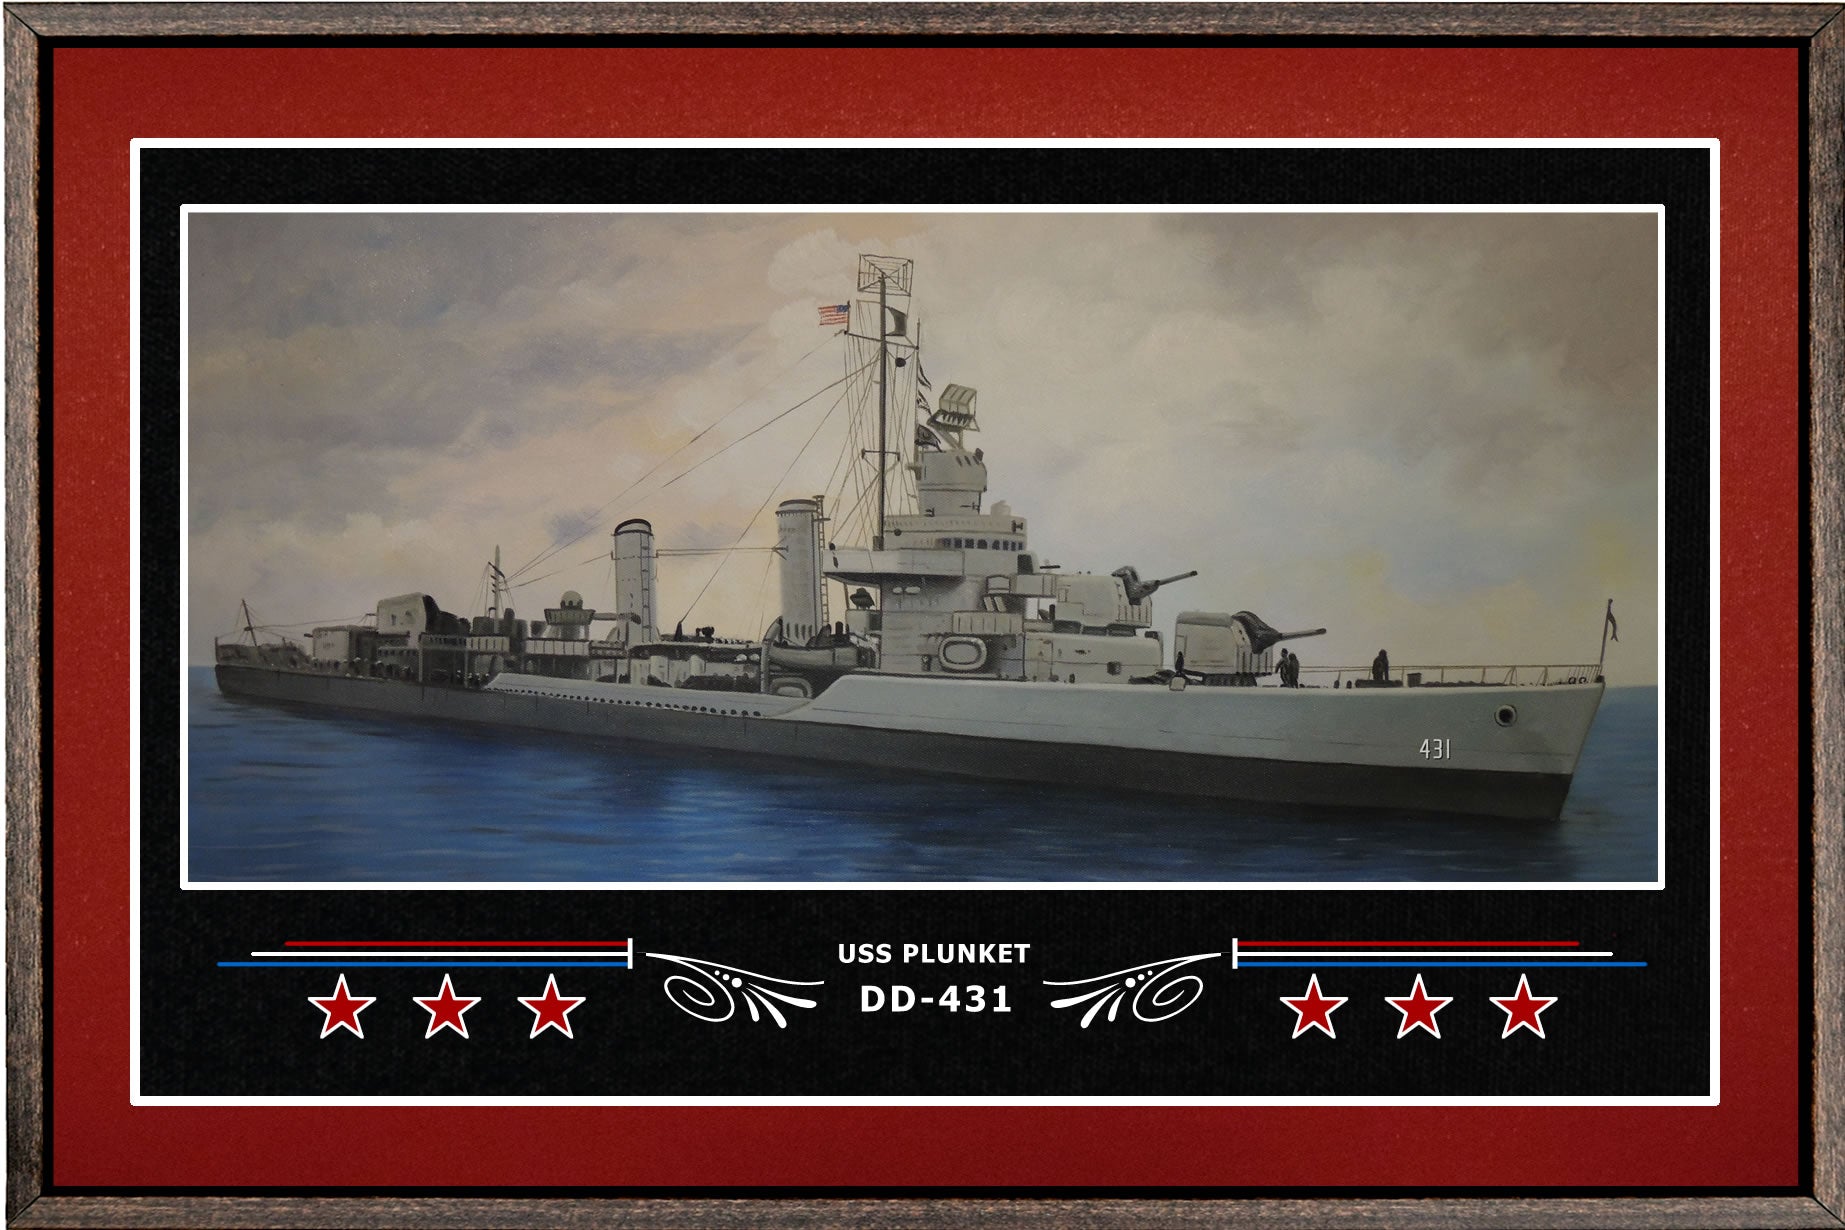 USS PLUNKET DD 431 BOX FRAMED CANVAS ART BURGUNDY